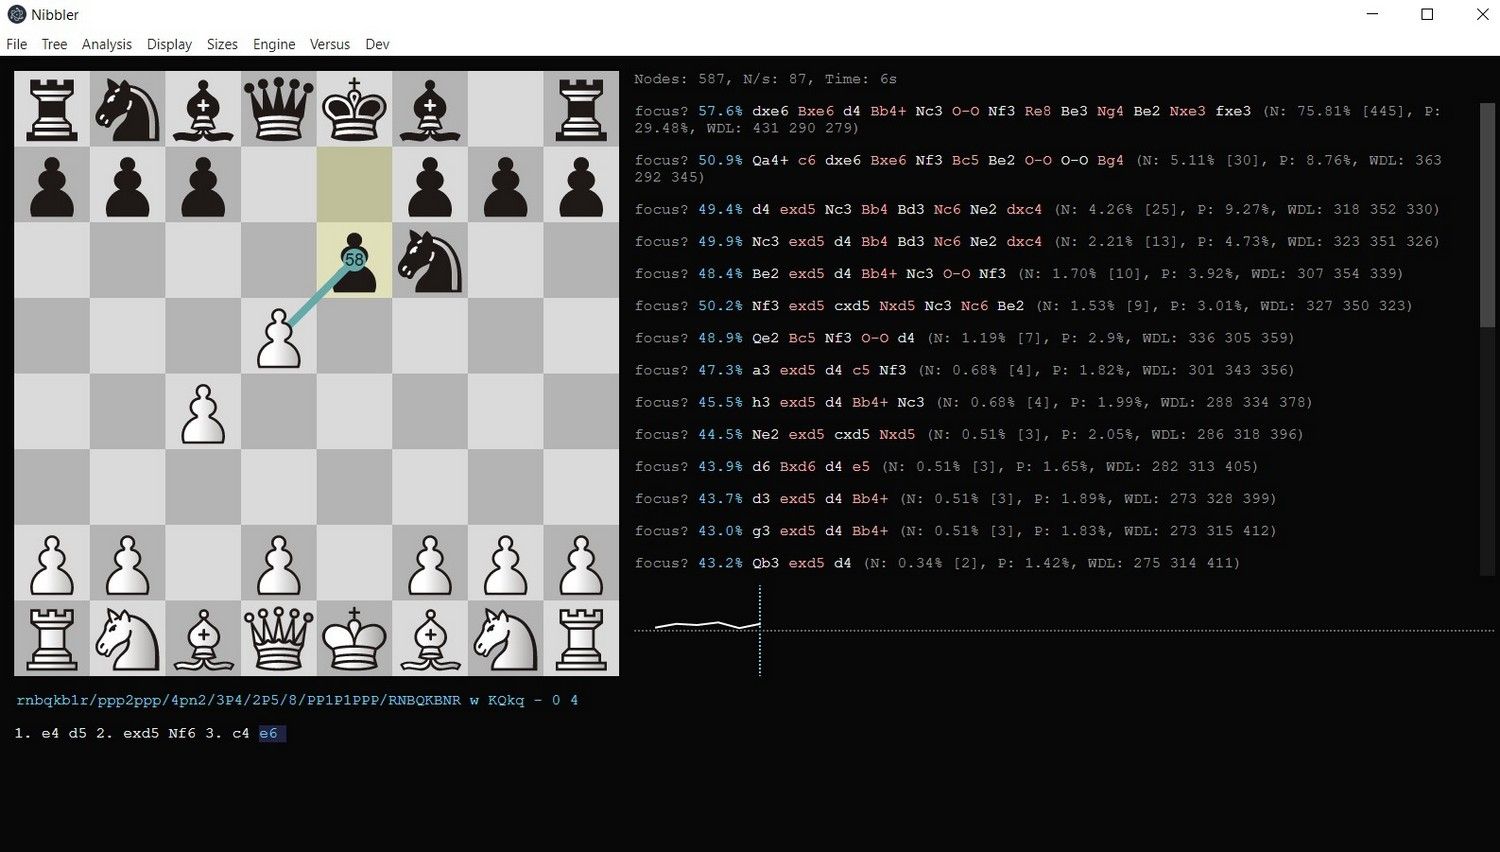 Leela Chess Zero: AlphaZero for the PC